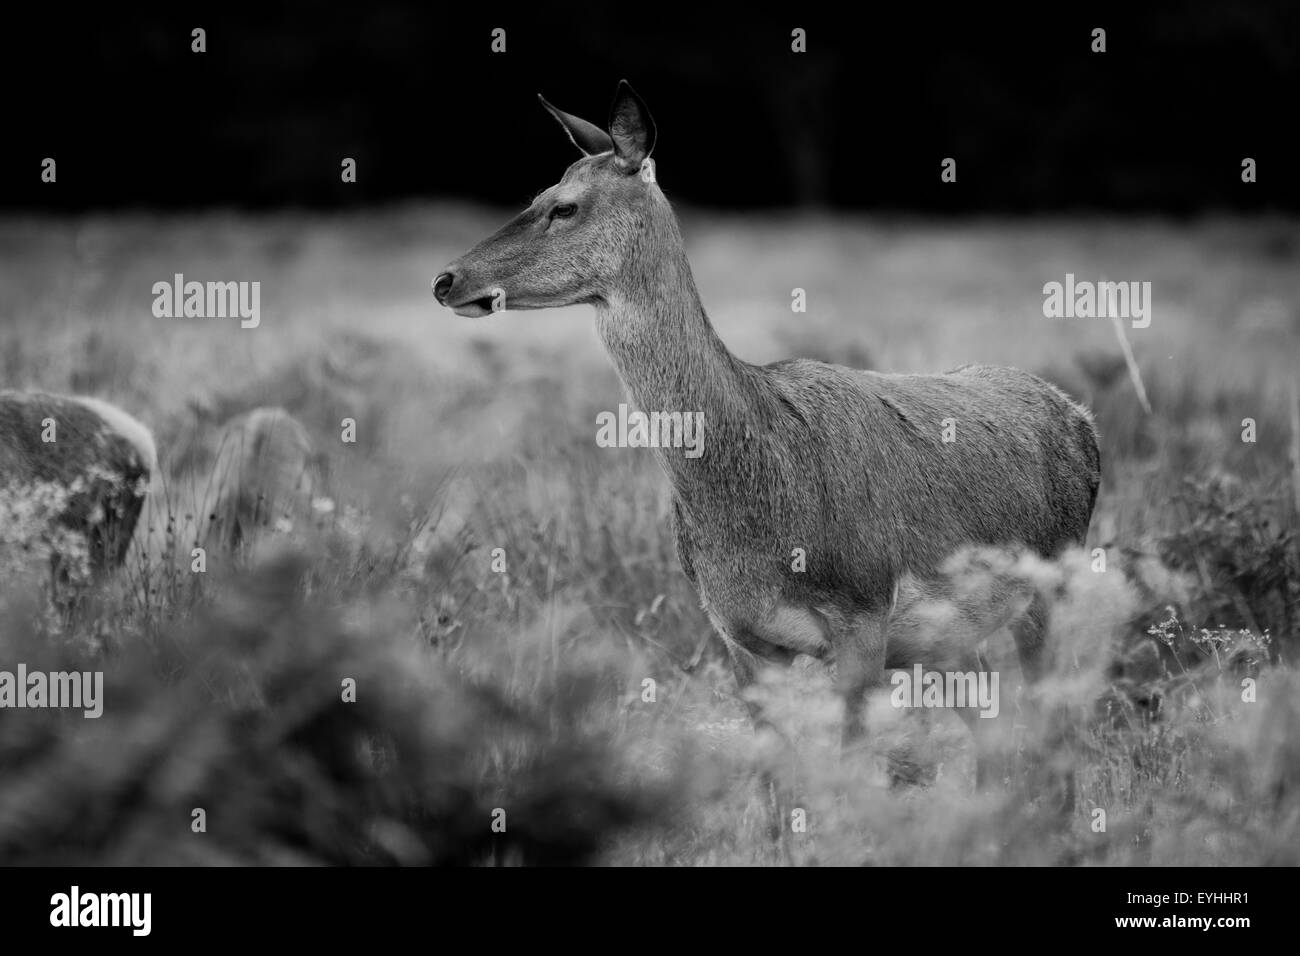 Richmond Park cervi, fauna selvatica free roaming fotografato in bianco e nero. Foto Stock